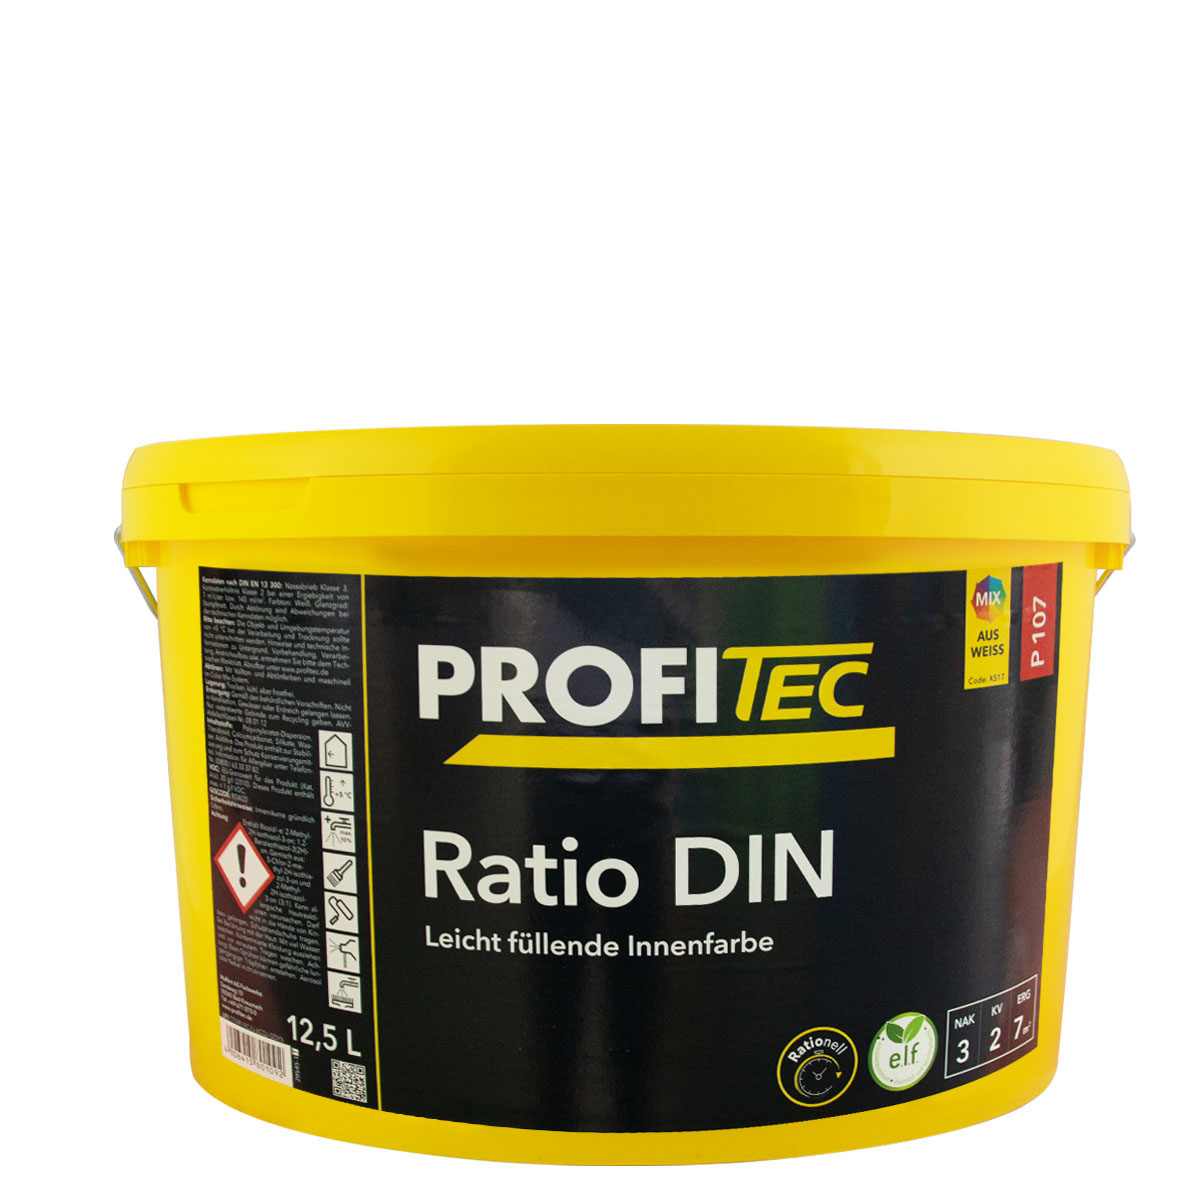 Profitec P107 RatioDin 12,5L stumpfmatt, rationelle Innenwandfarbe (alt DINweiß)